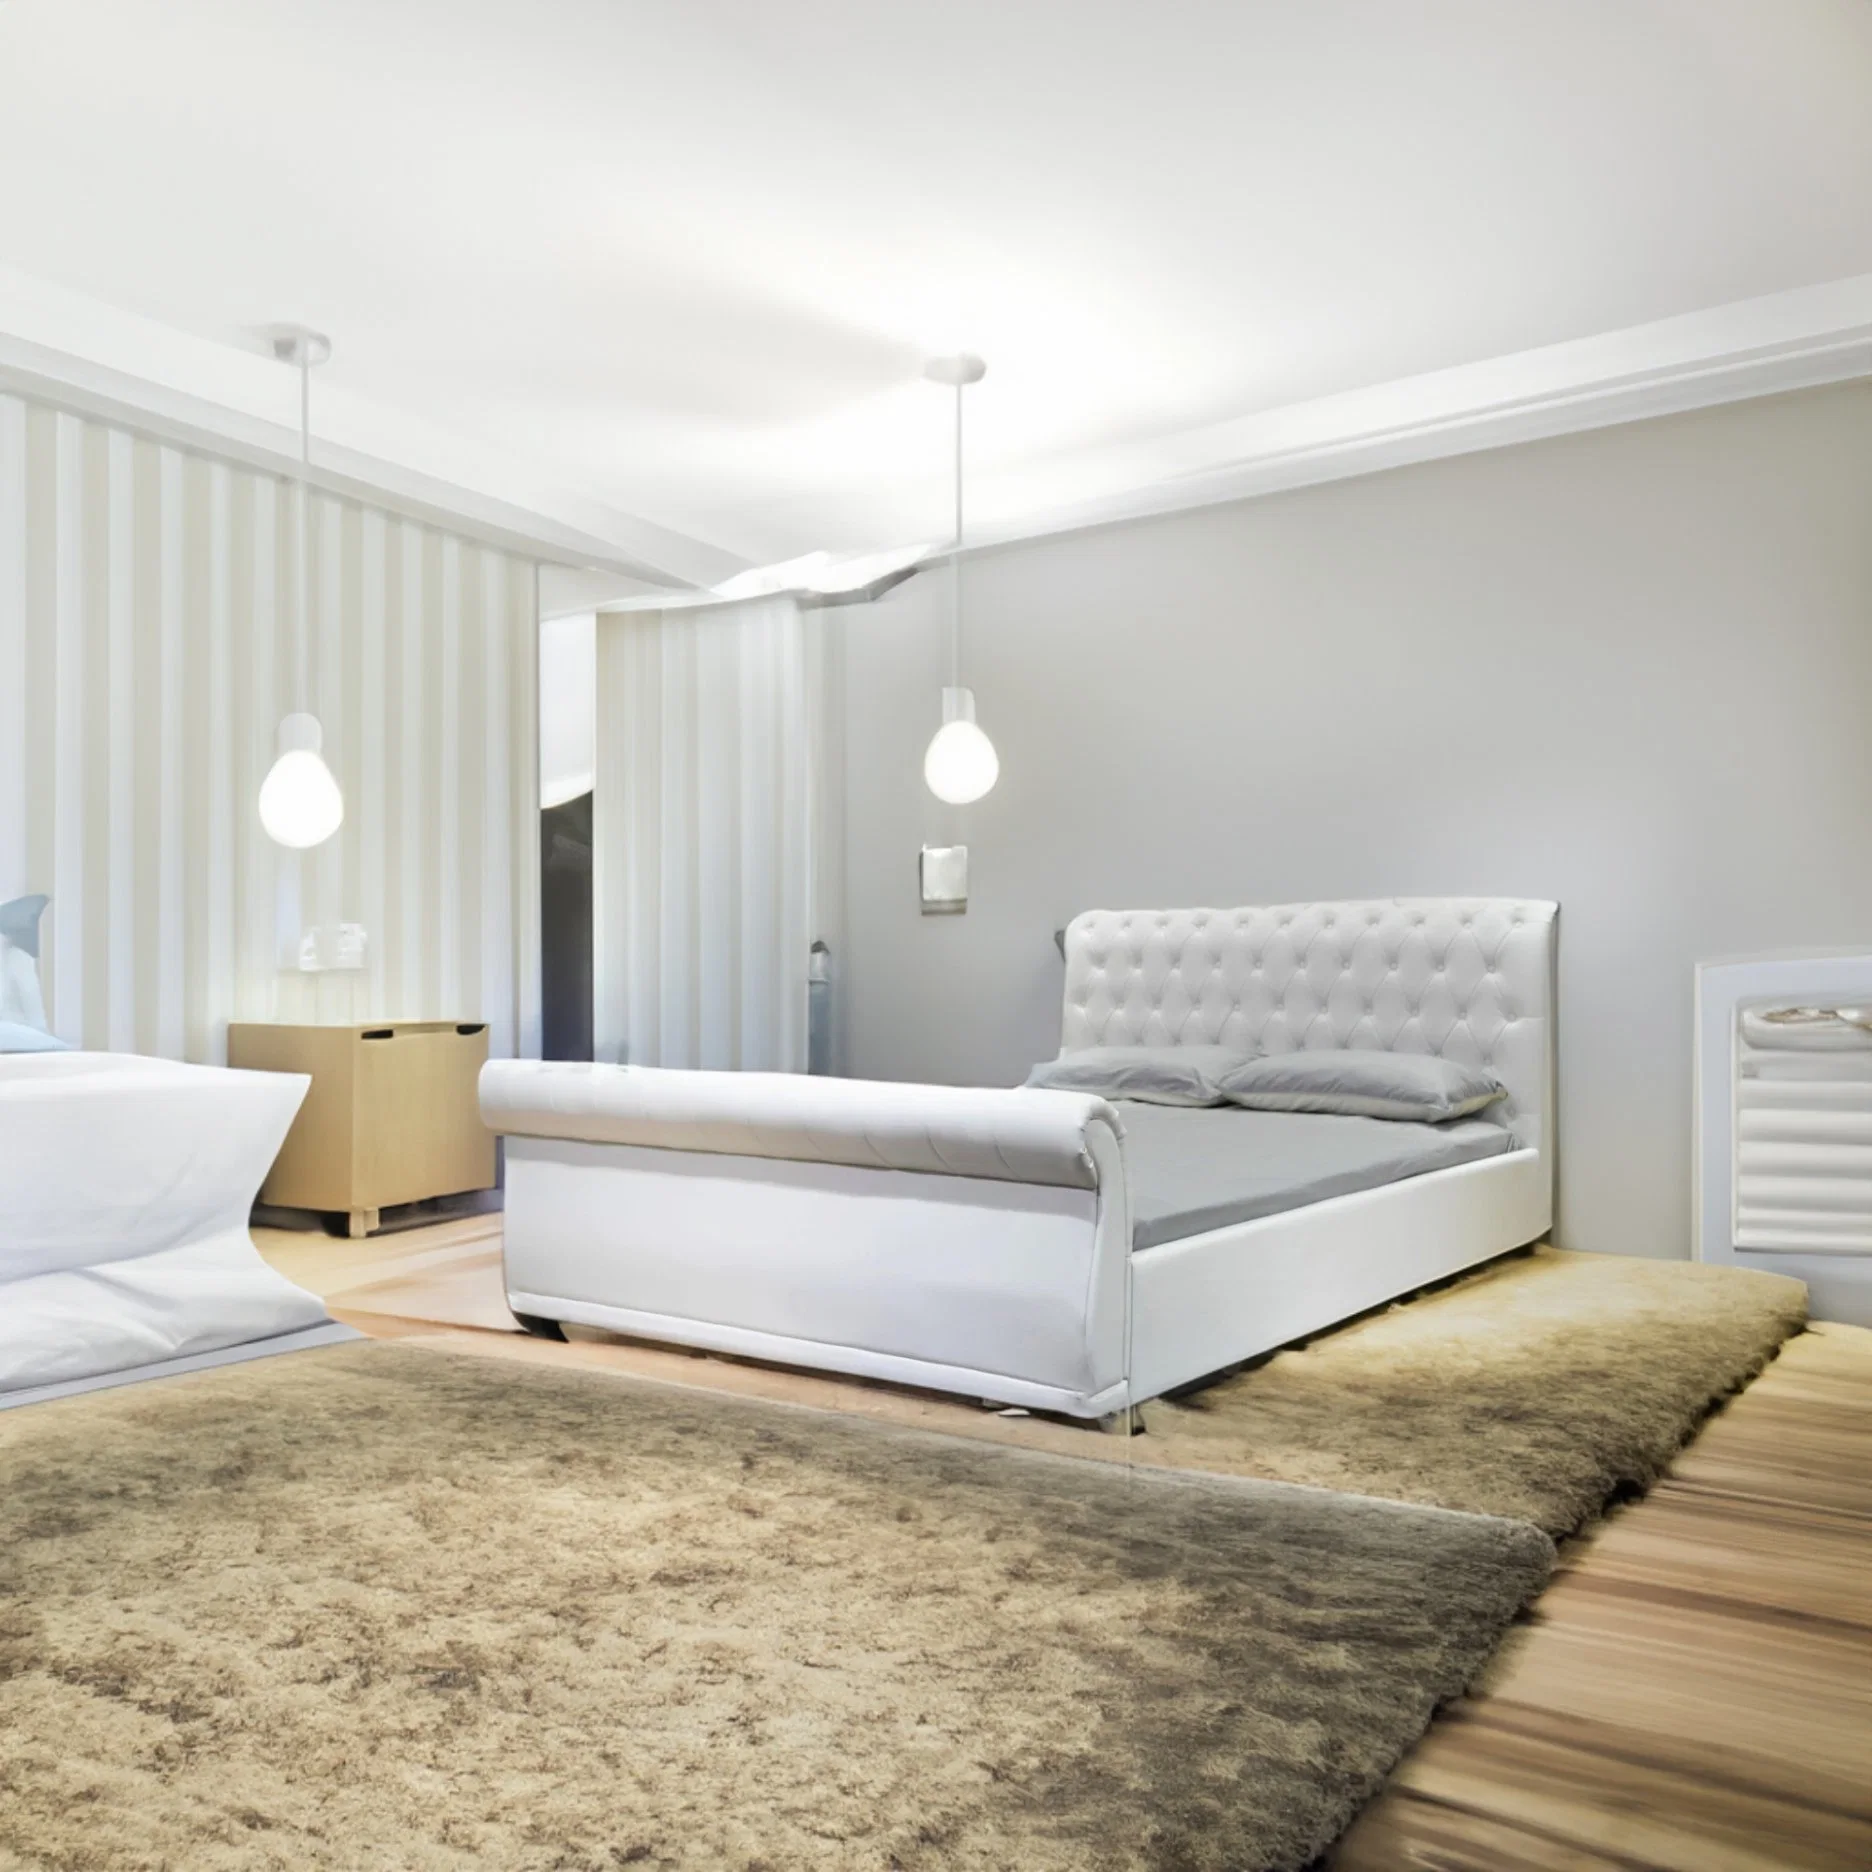 Quarto Duplo quente Americano Huayang personalizado Quarto Design Cama Sala de estar Mobiliário